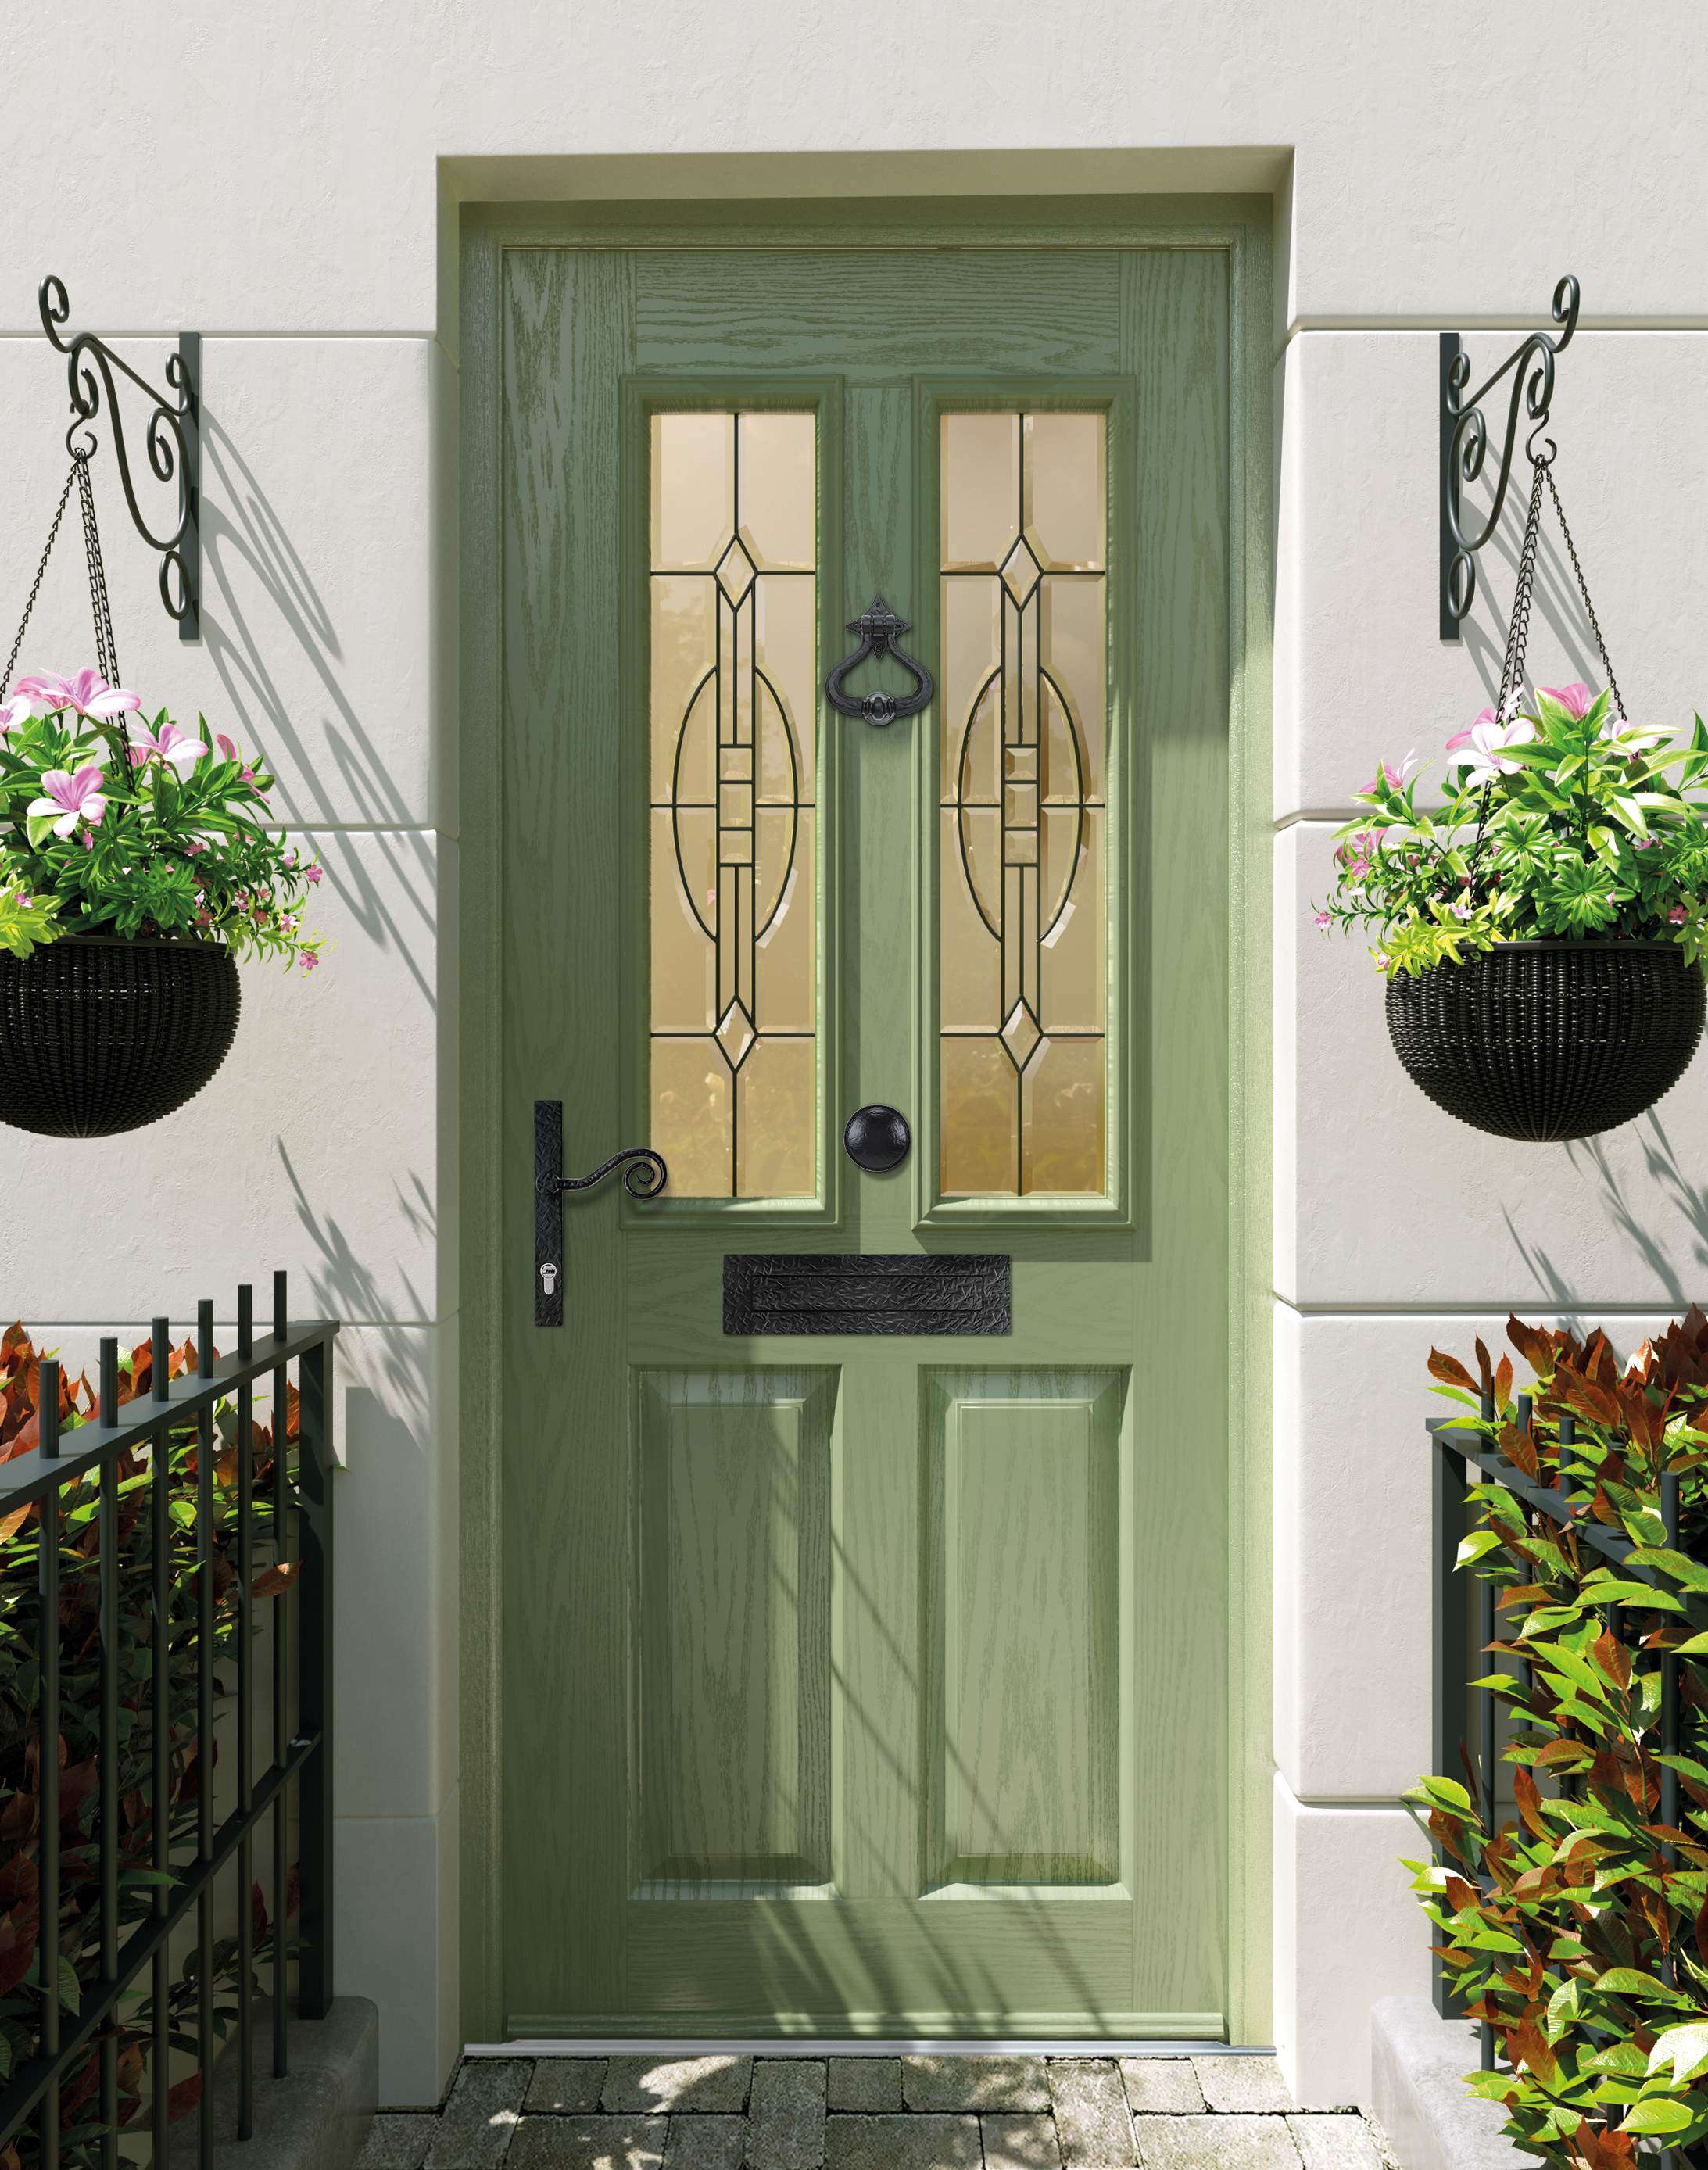 Apeer Door Ranges - Green Accessibility Front Door with knocker